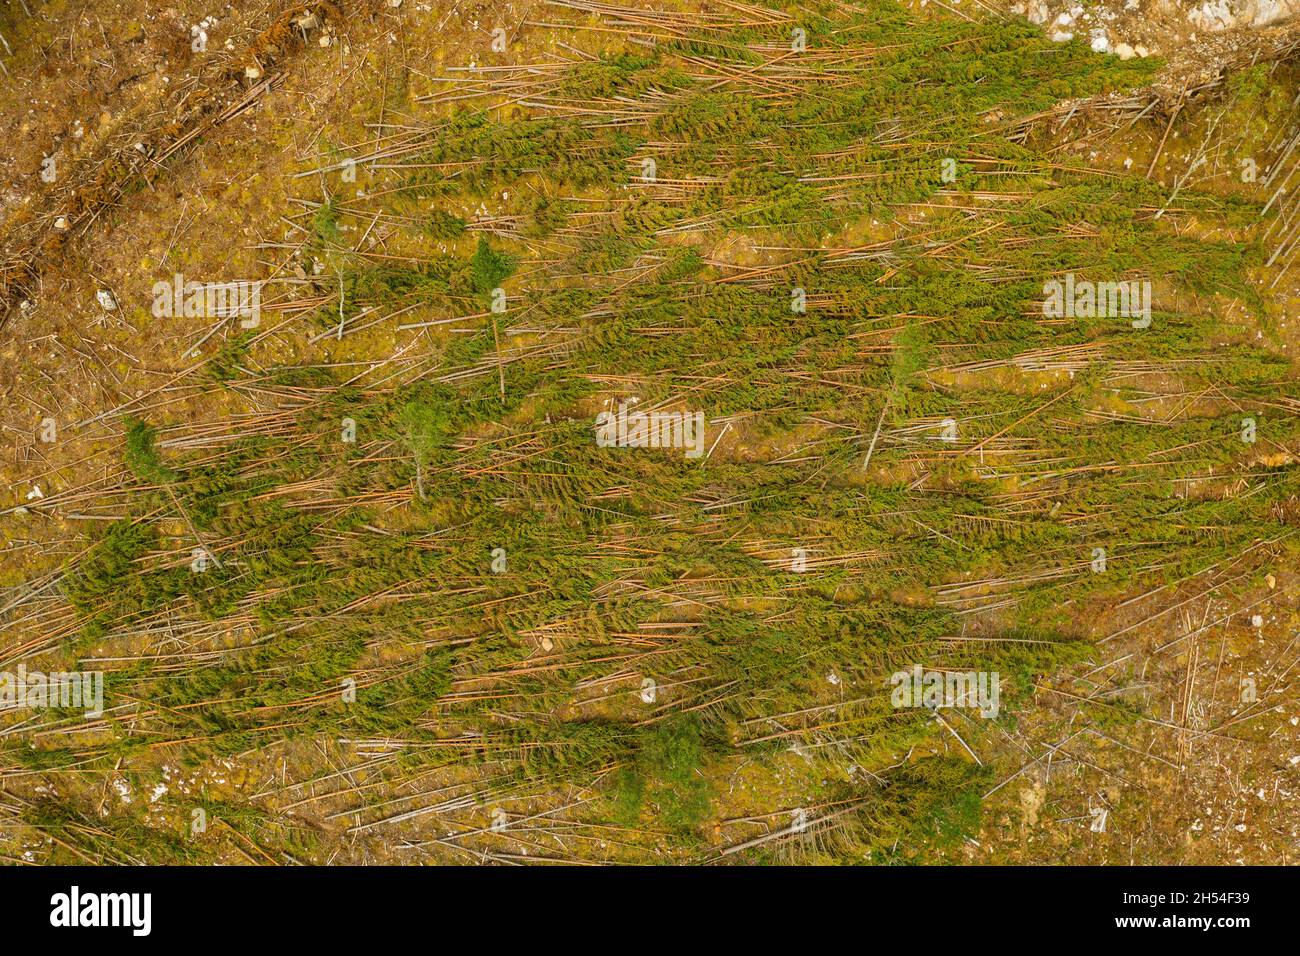 Vue aérienne de la récolte du bois sur une colline près de Cannich dans les Highlands d'Écosse. Banque D'Images